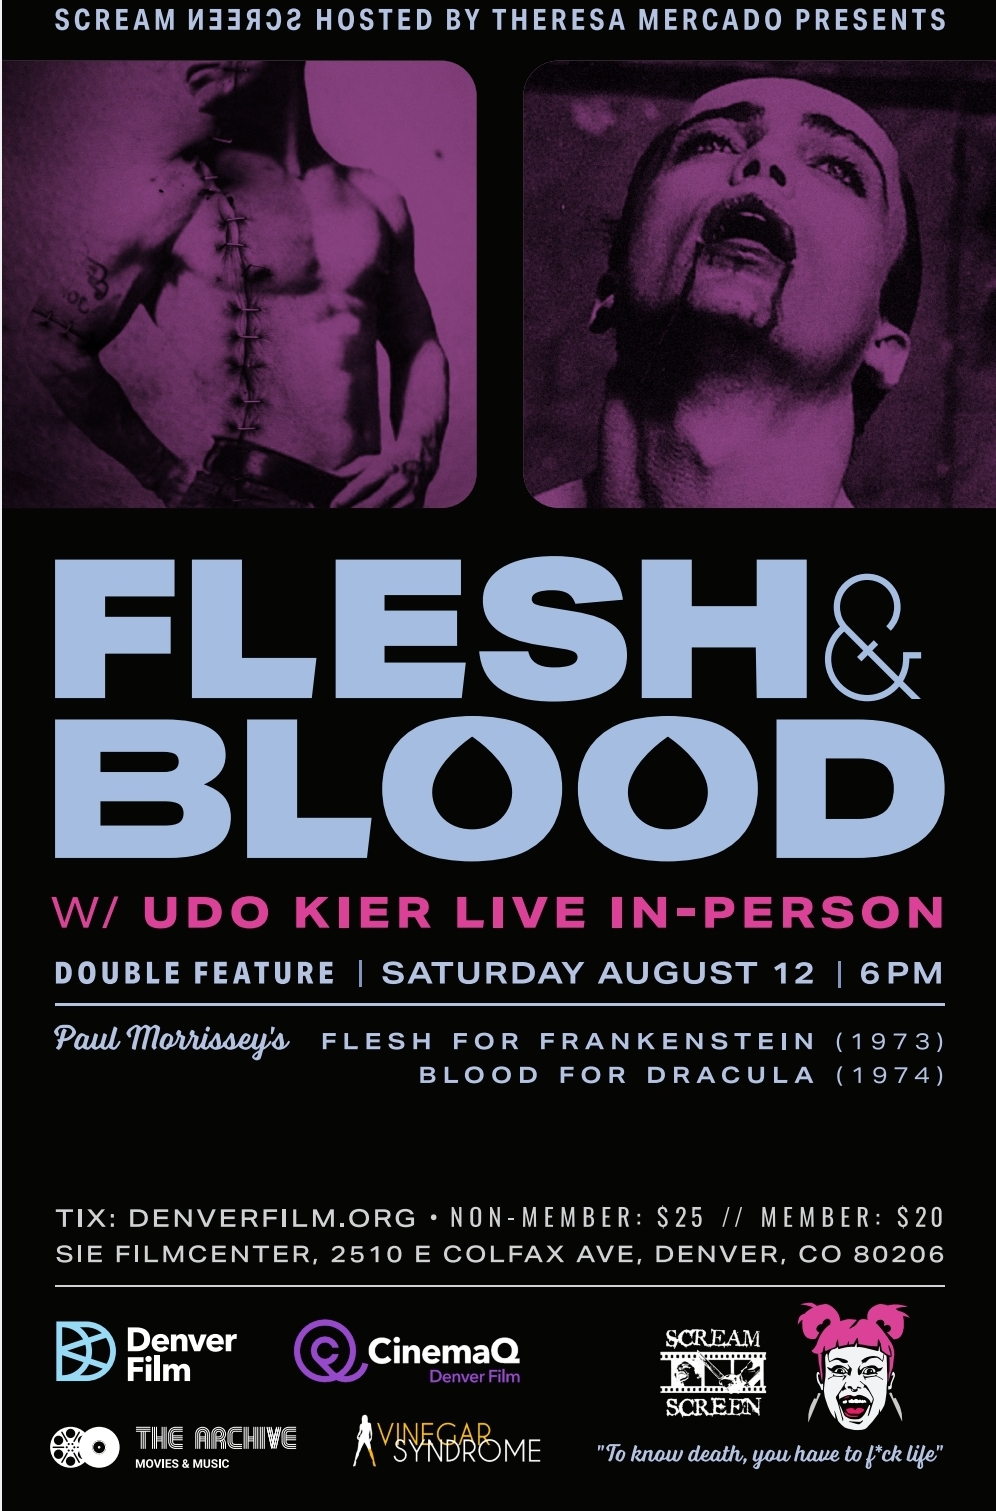 Scream Screen presents: Flesh & Blood w/ Udo Kier Live In-Person!